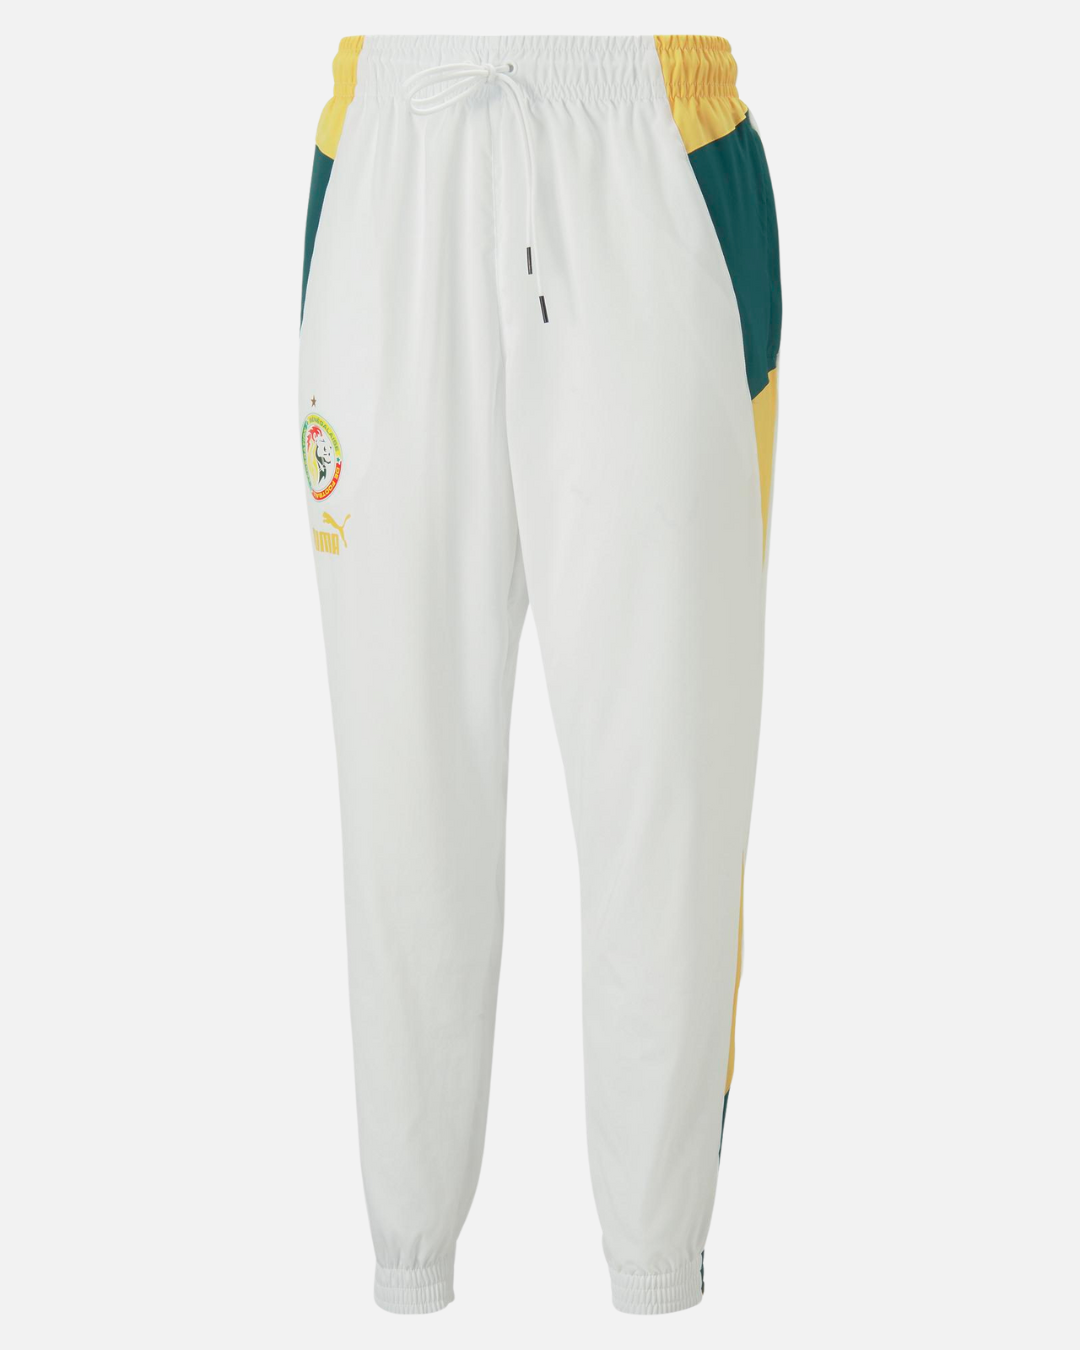 Pantalón de entrenamiento Senegal 2022/2023 - Blanco/Verde/Amarillo